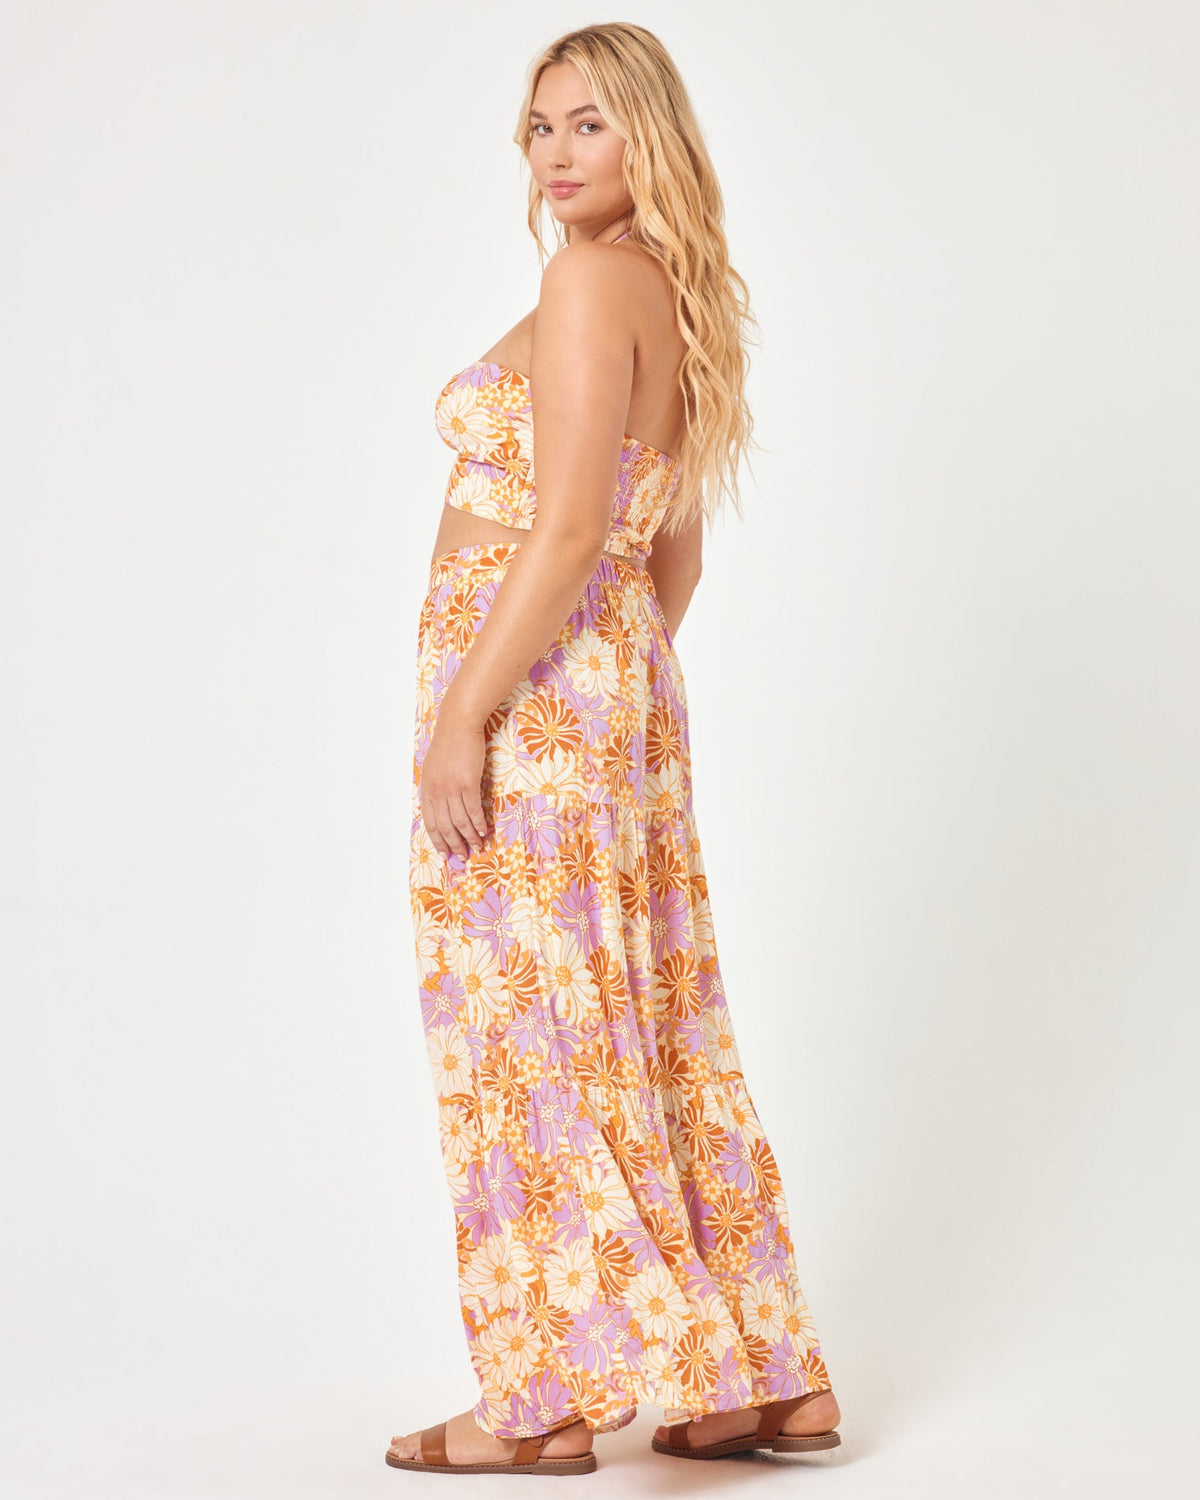 Bondi Skirt Wavy Daisy | Model: Sydney (size: XL)